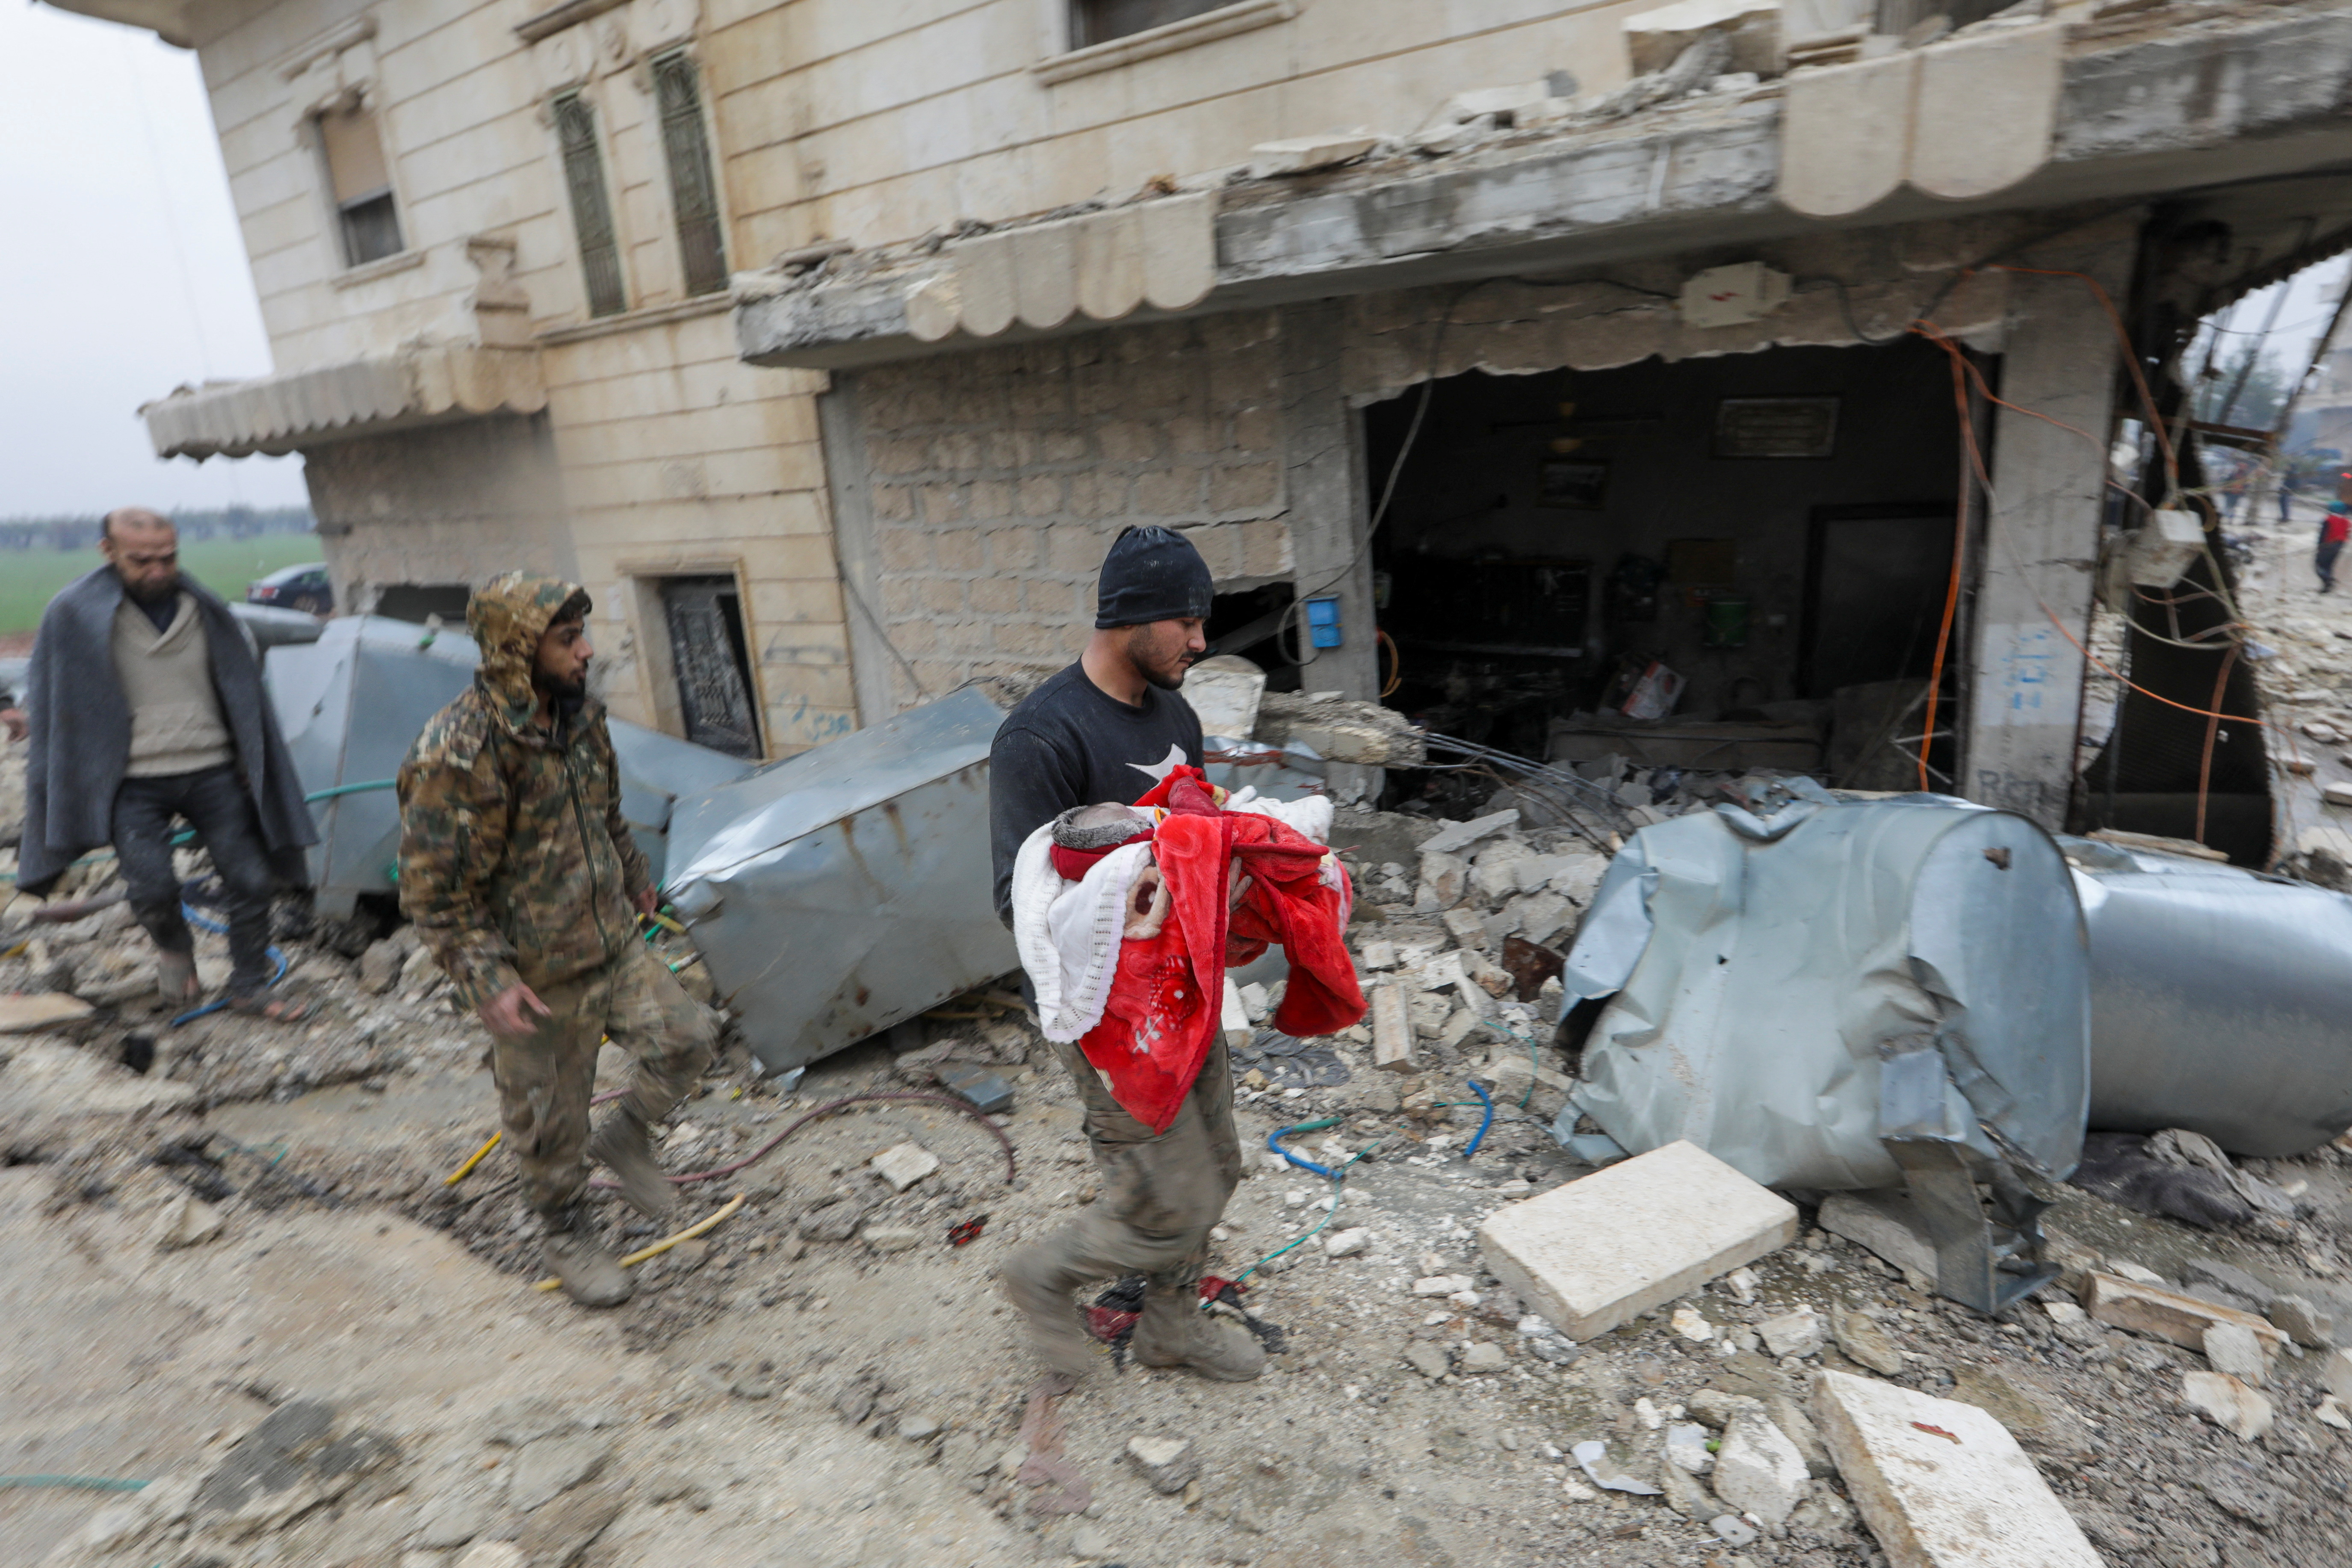 El dolor de un hombre que traslada el cuerpo de un pequeño, víctima mortal del sismo en Jandaris (REUTERS/Khalil Ashawi)